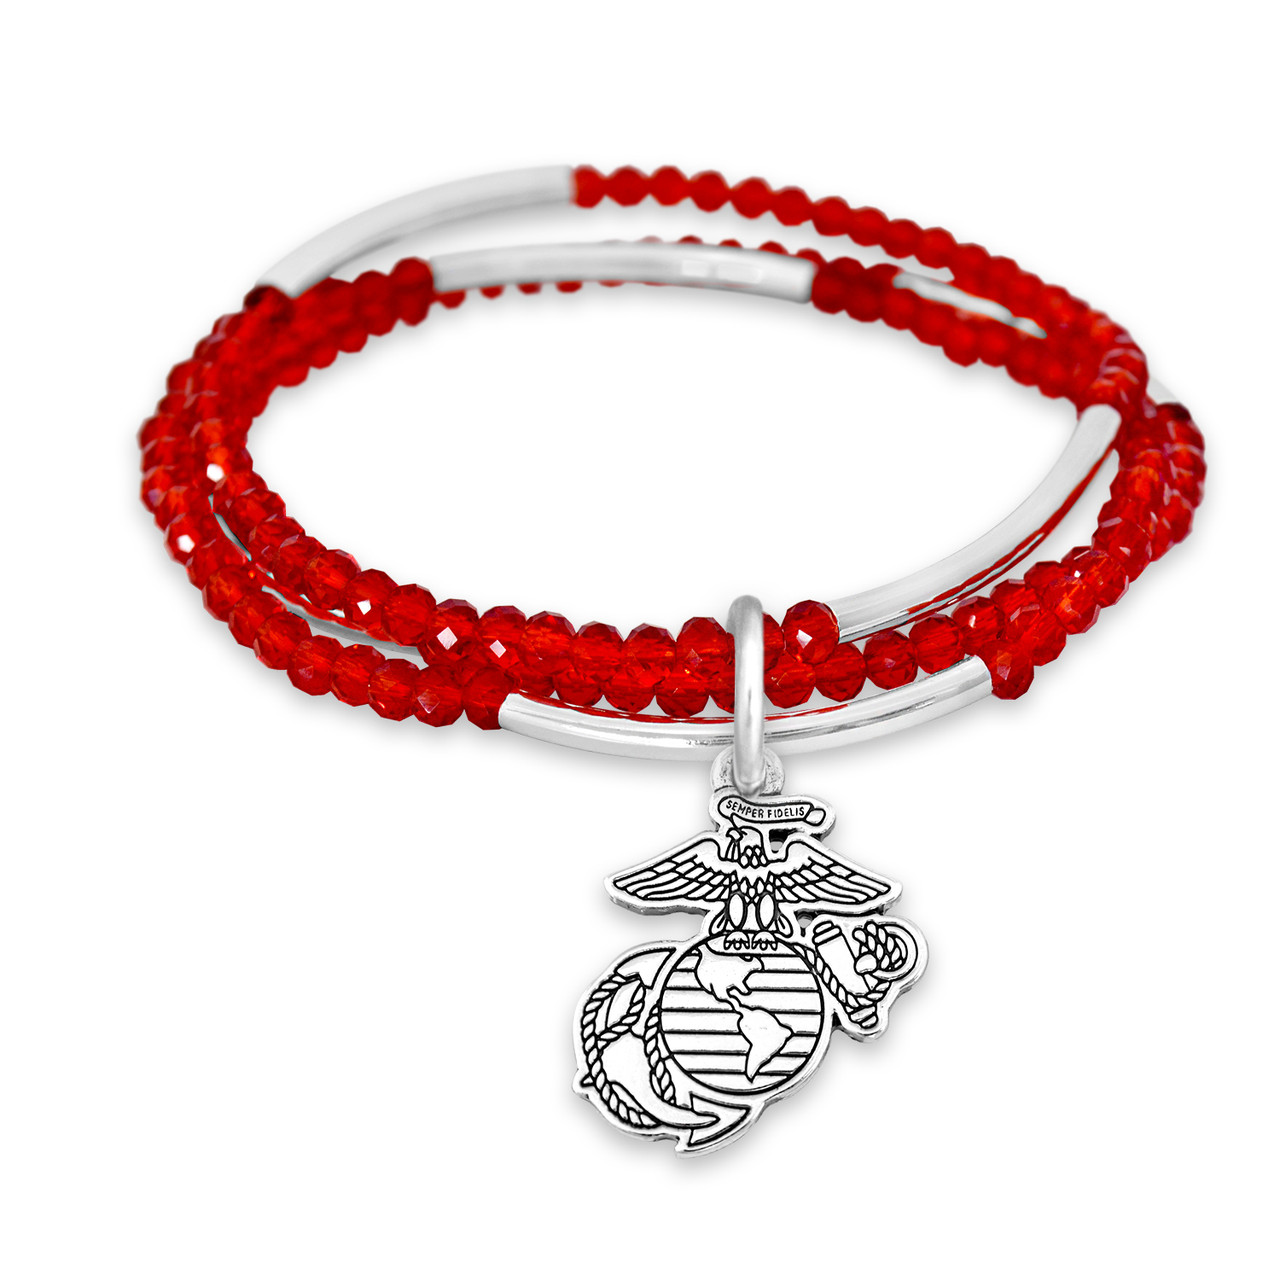 U.S. Marines® Bracelet- Chloe